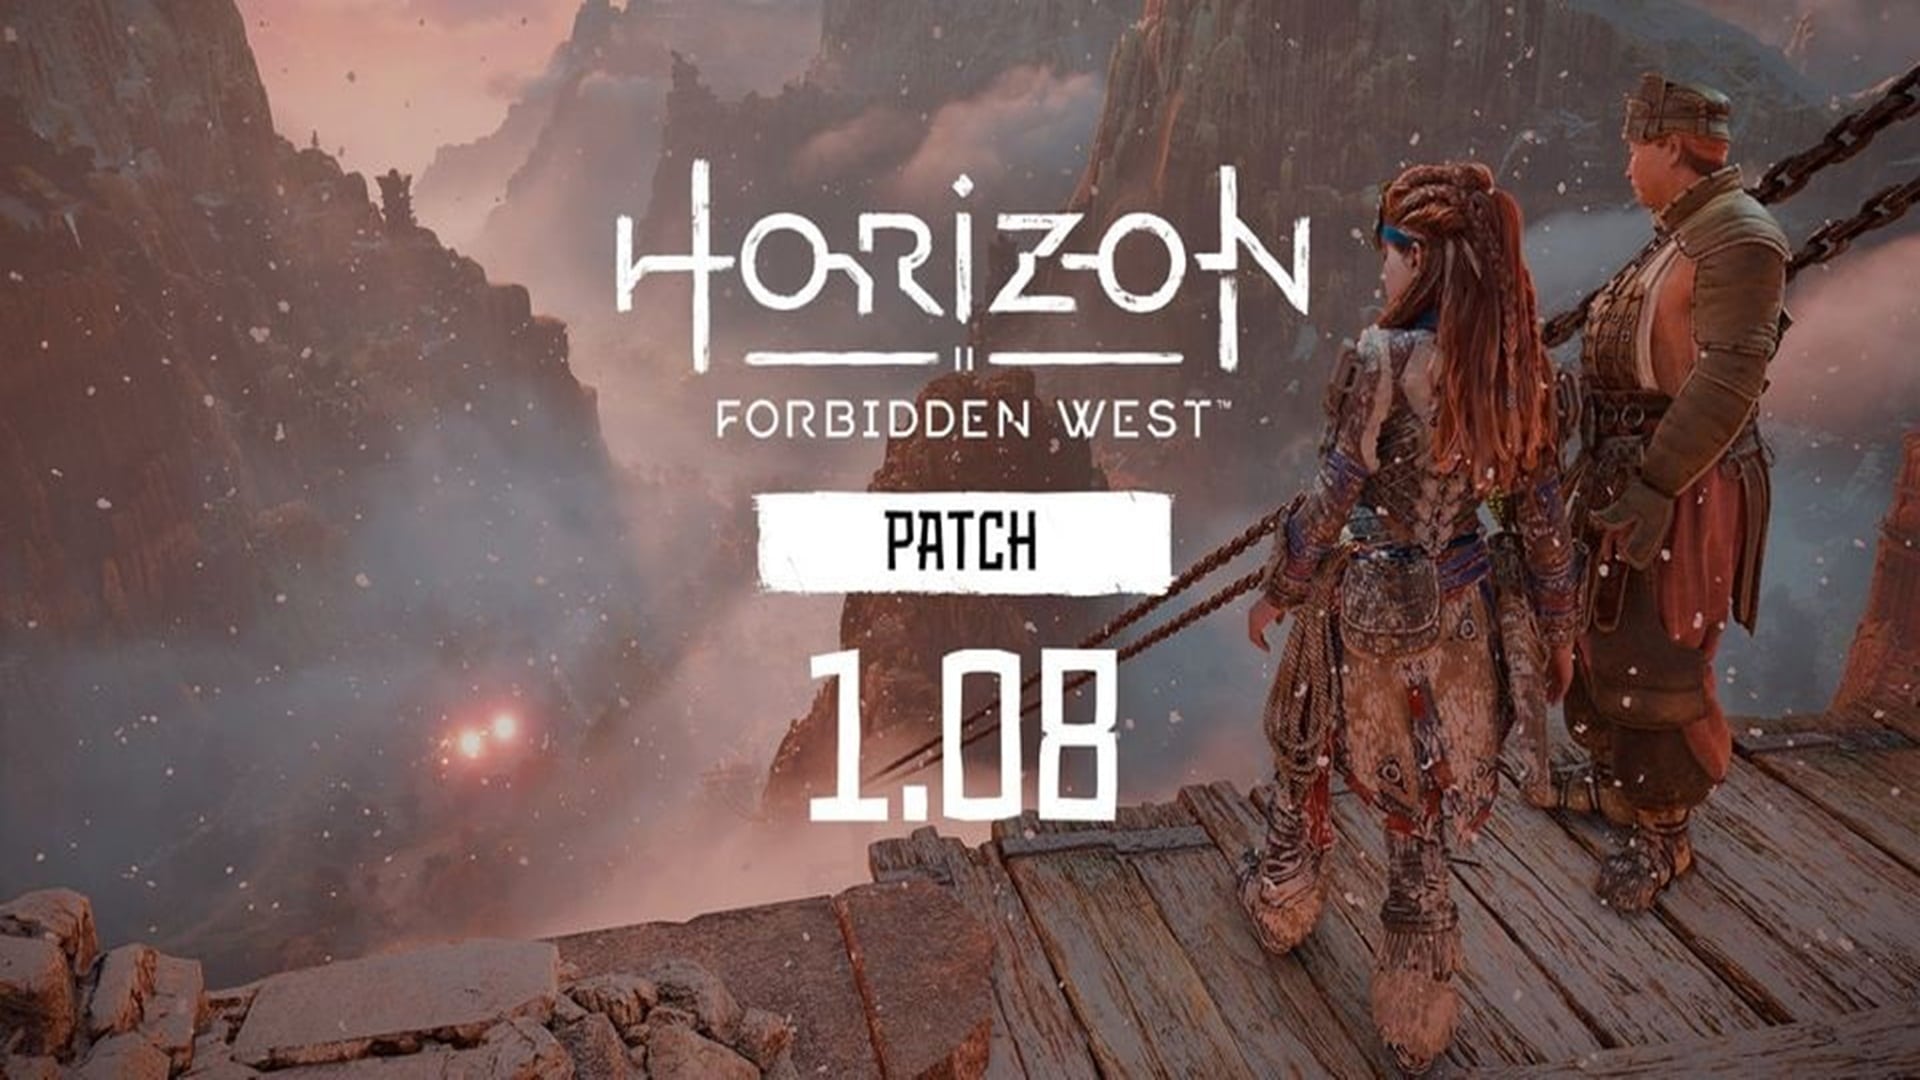 El parche 1.08 de Horizon Forbidden West ya está disponible, GamersRD